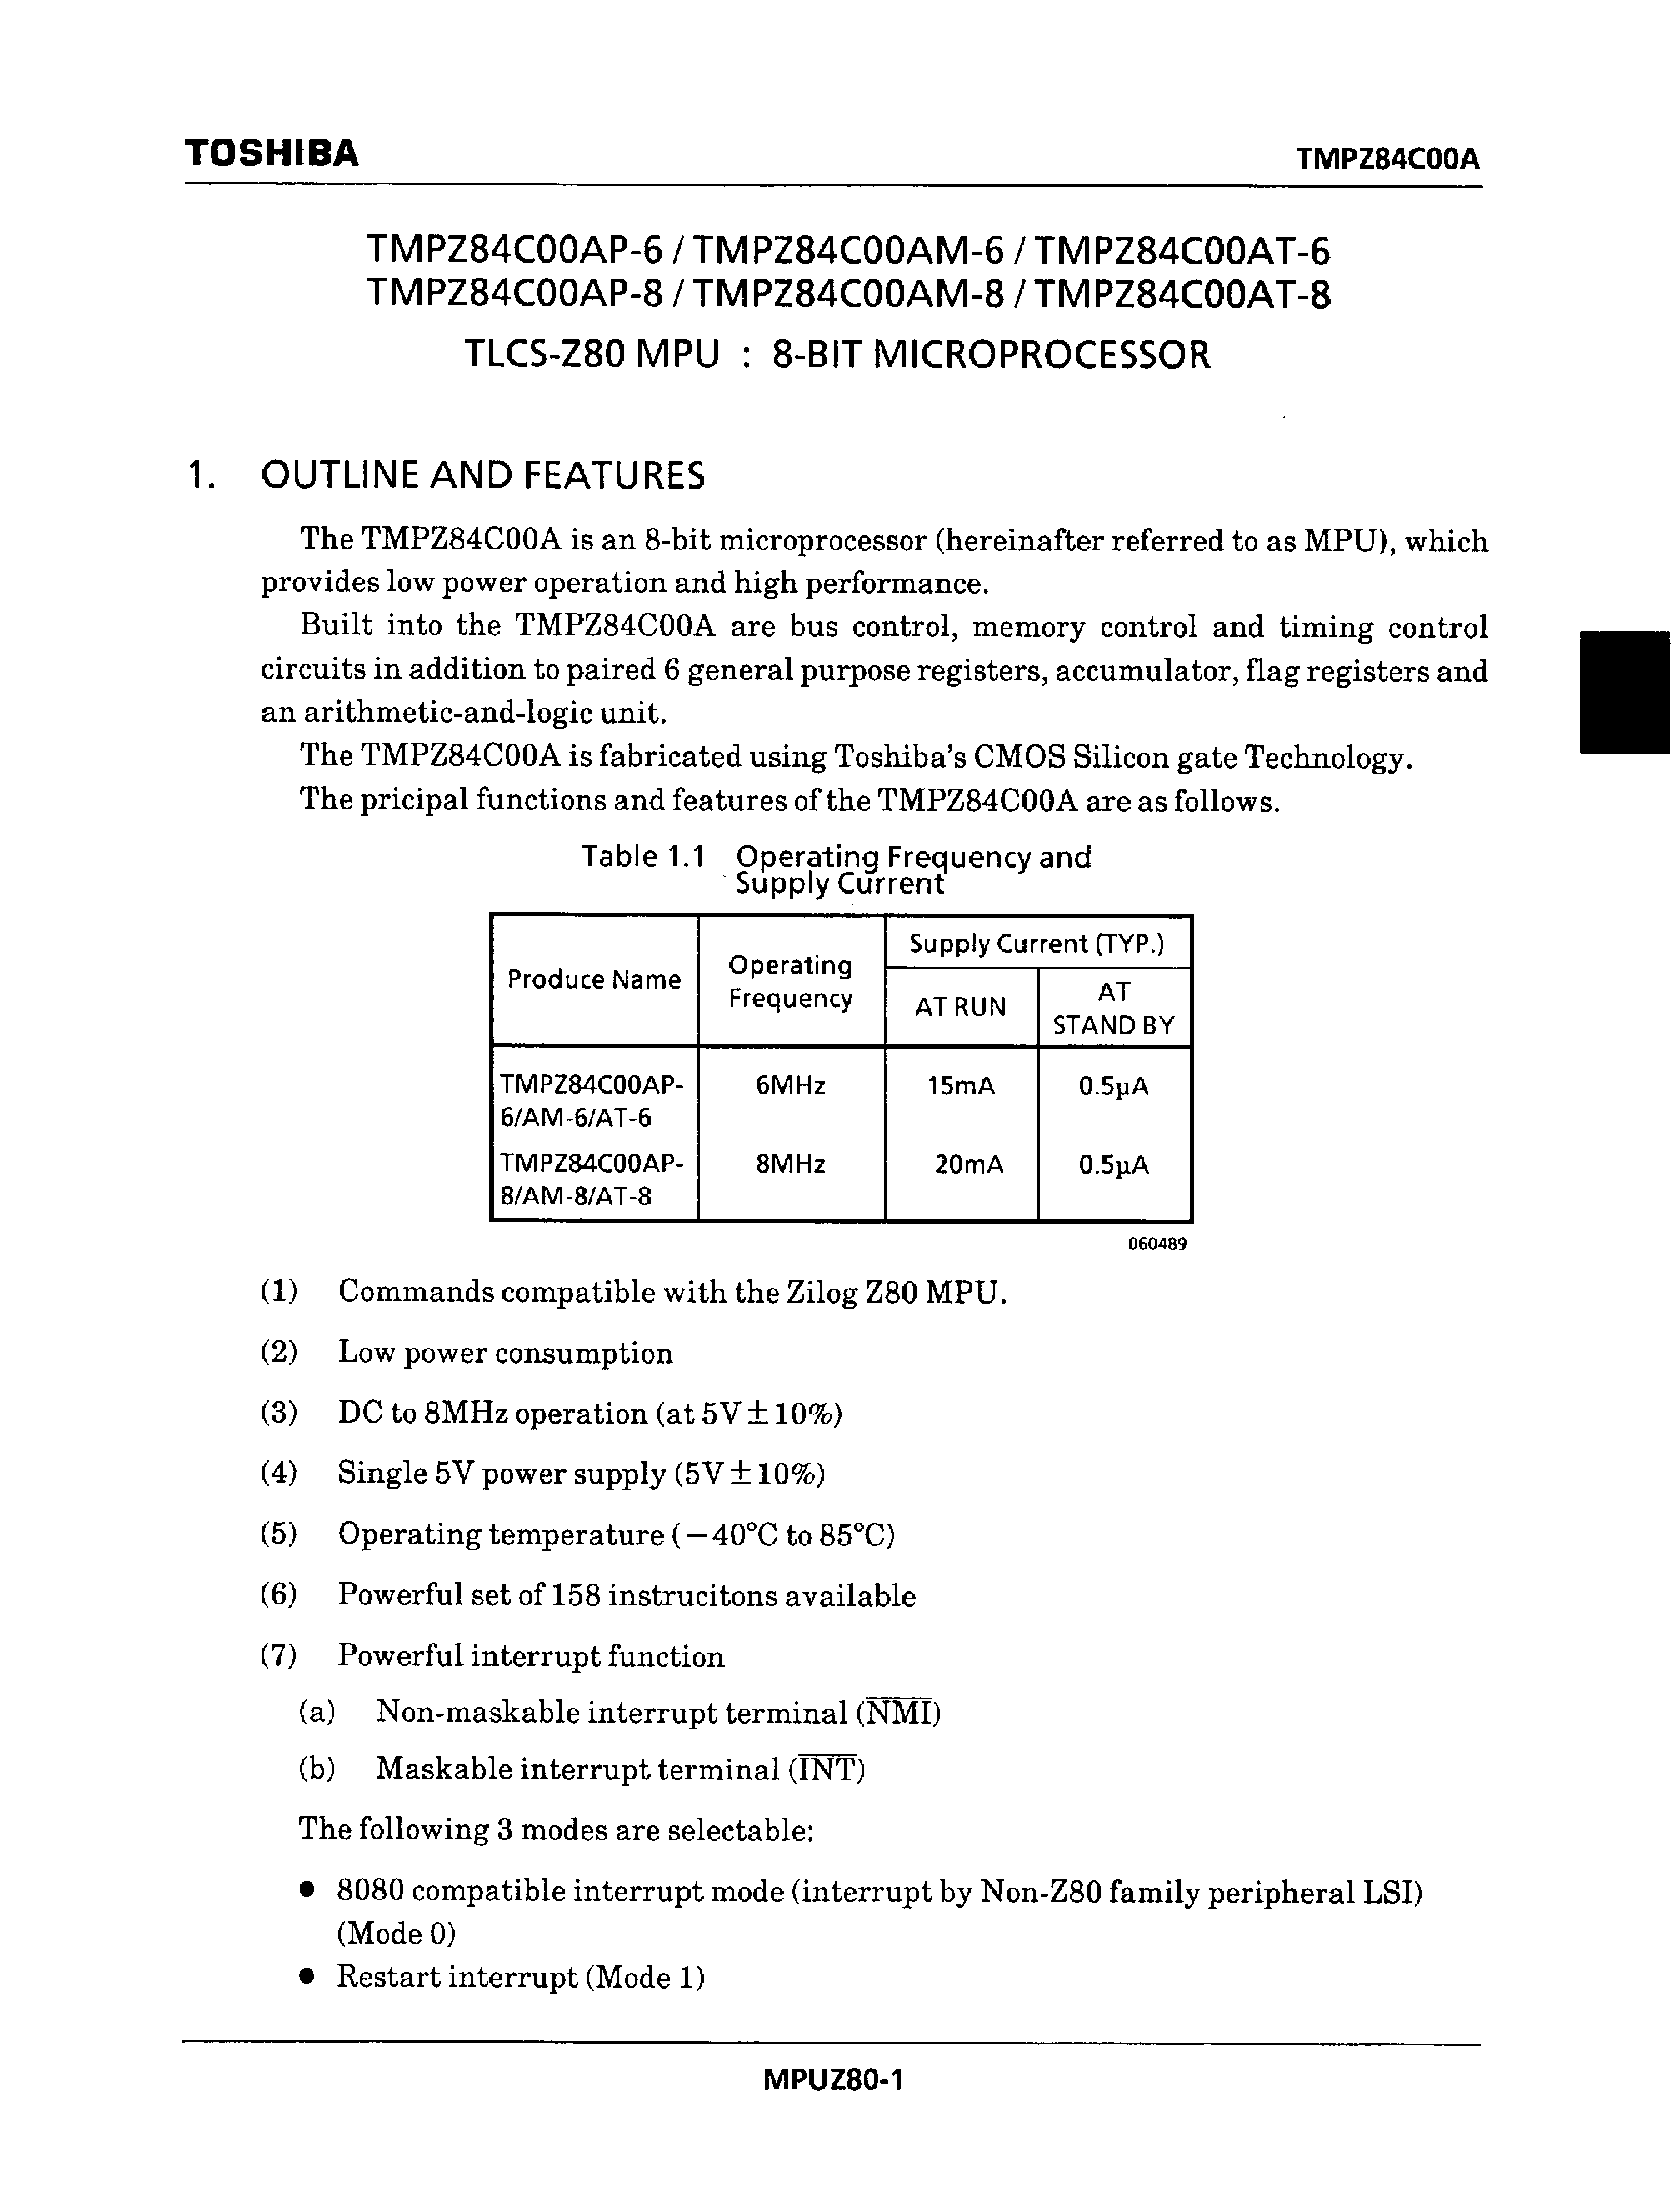 Даташит TMPZ84C00AT-8 - TLCS-Z80 MPU : 8-BIT MICROPROCESSOR страница 1